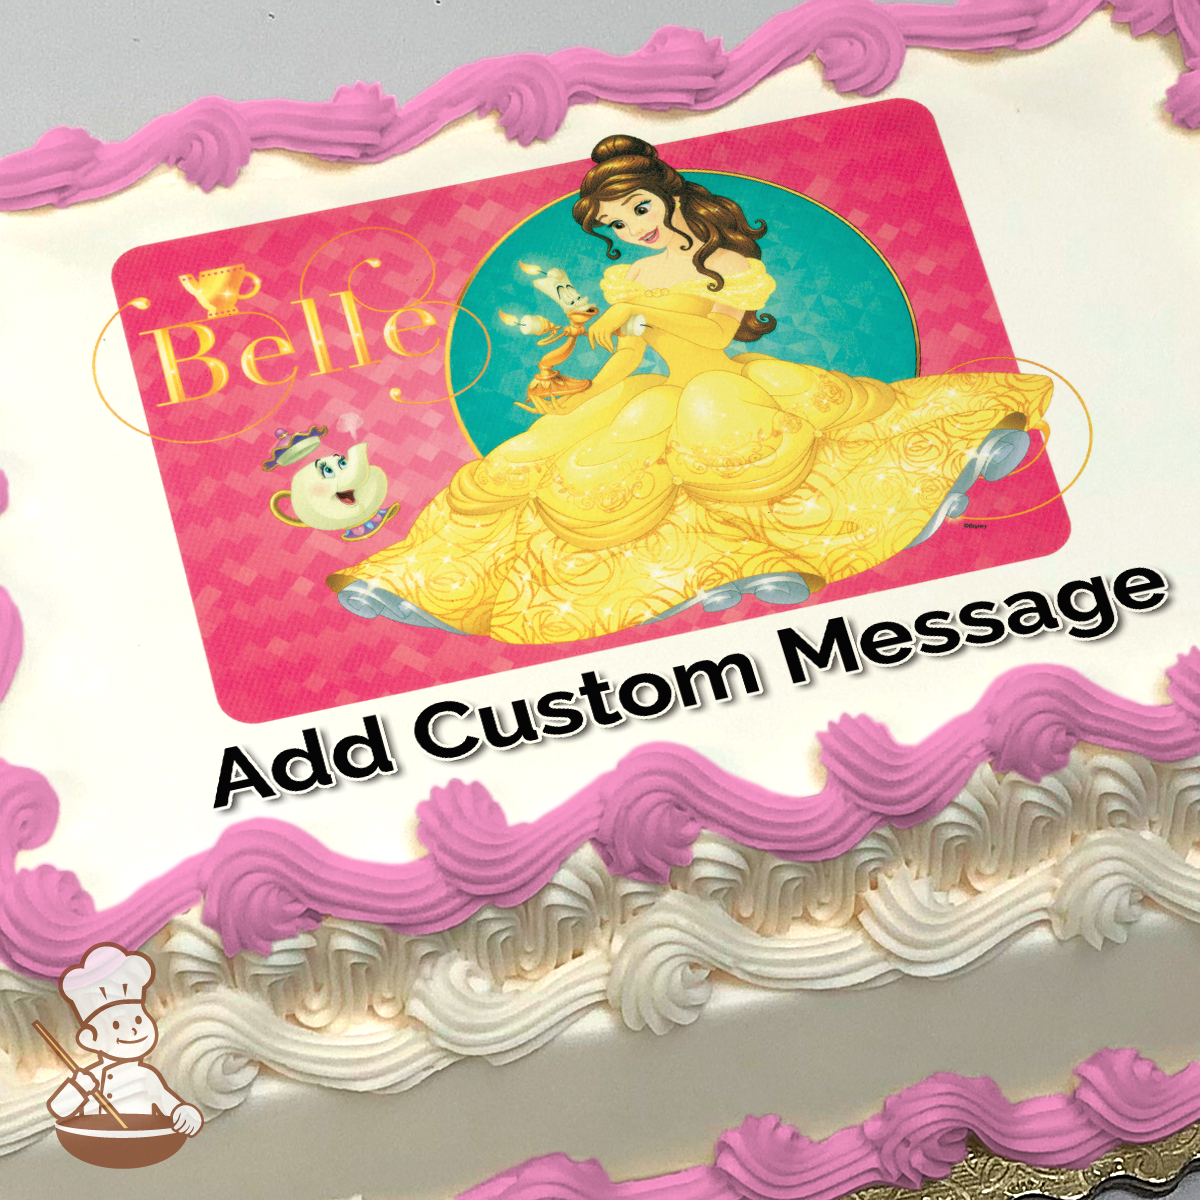 2 Tier Disney Princess Cake For Girls